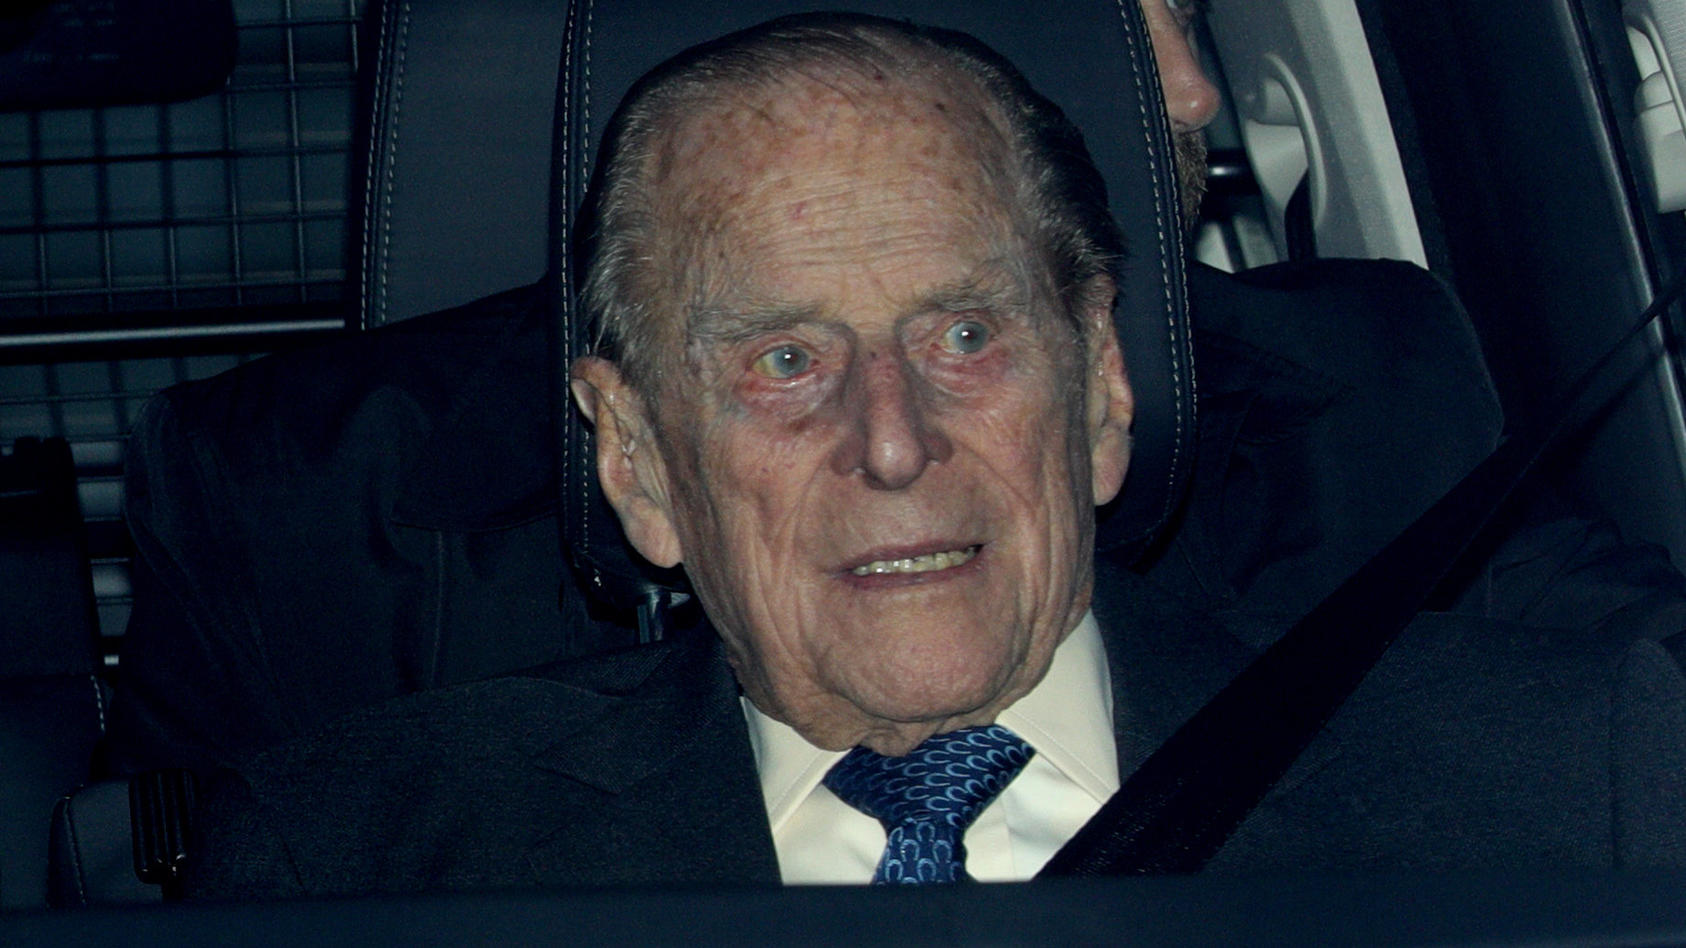 ARCHIV - 19.12.2018, Großbritannien, London: Prinz Philip, der Herzog von Edinburgh, verlässt nach dem Weihnachtsessen der Königin in einem Fahrzeug den Buckingham Palace. (Zu dpa "Prinz Philip bleibt im Krankenhaus - Besuch von Sohn Charles") Foto: 